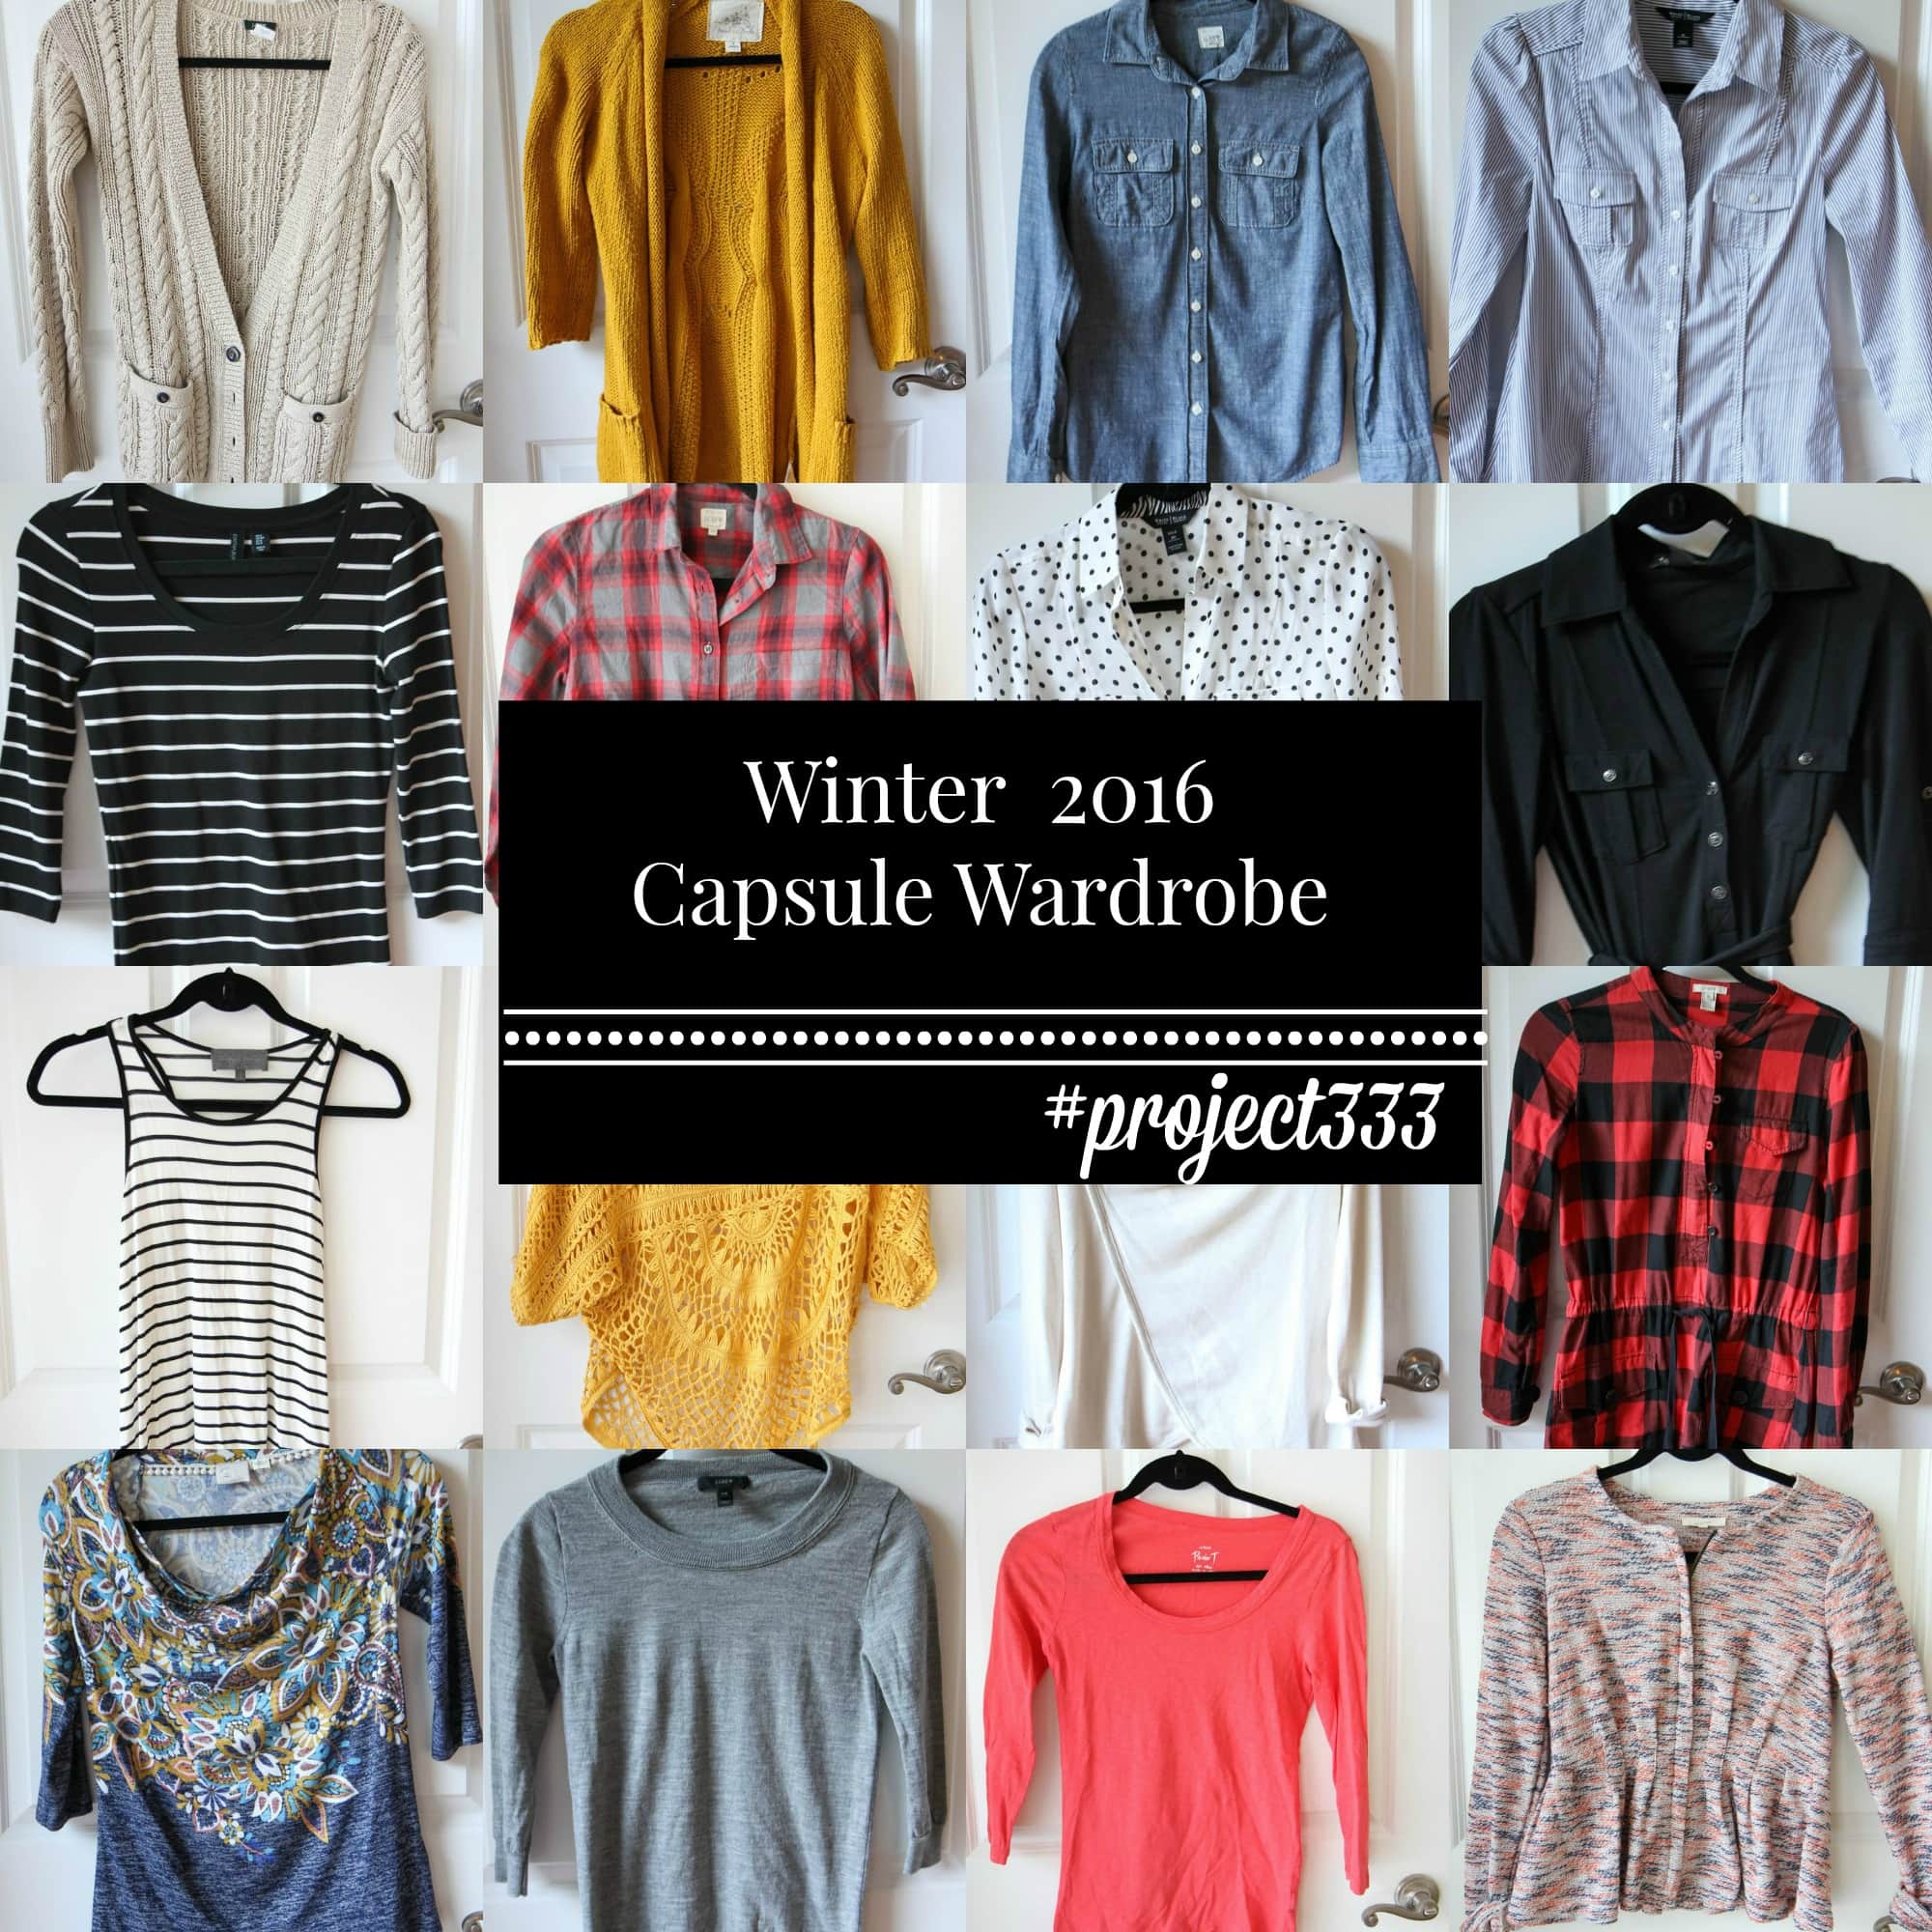 Winter 2016 Fashion Capsule Wardrobe Project